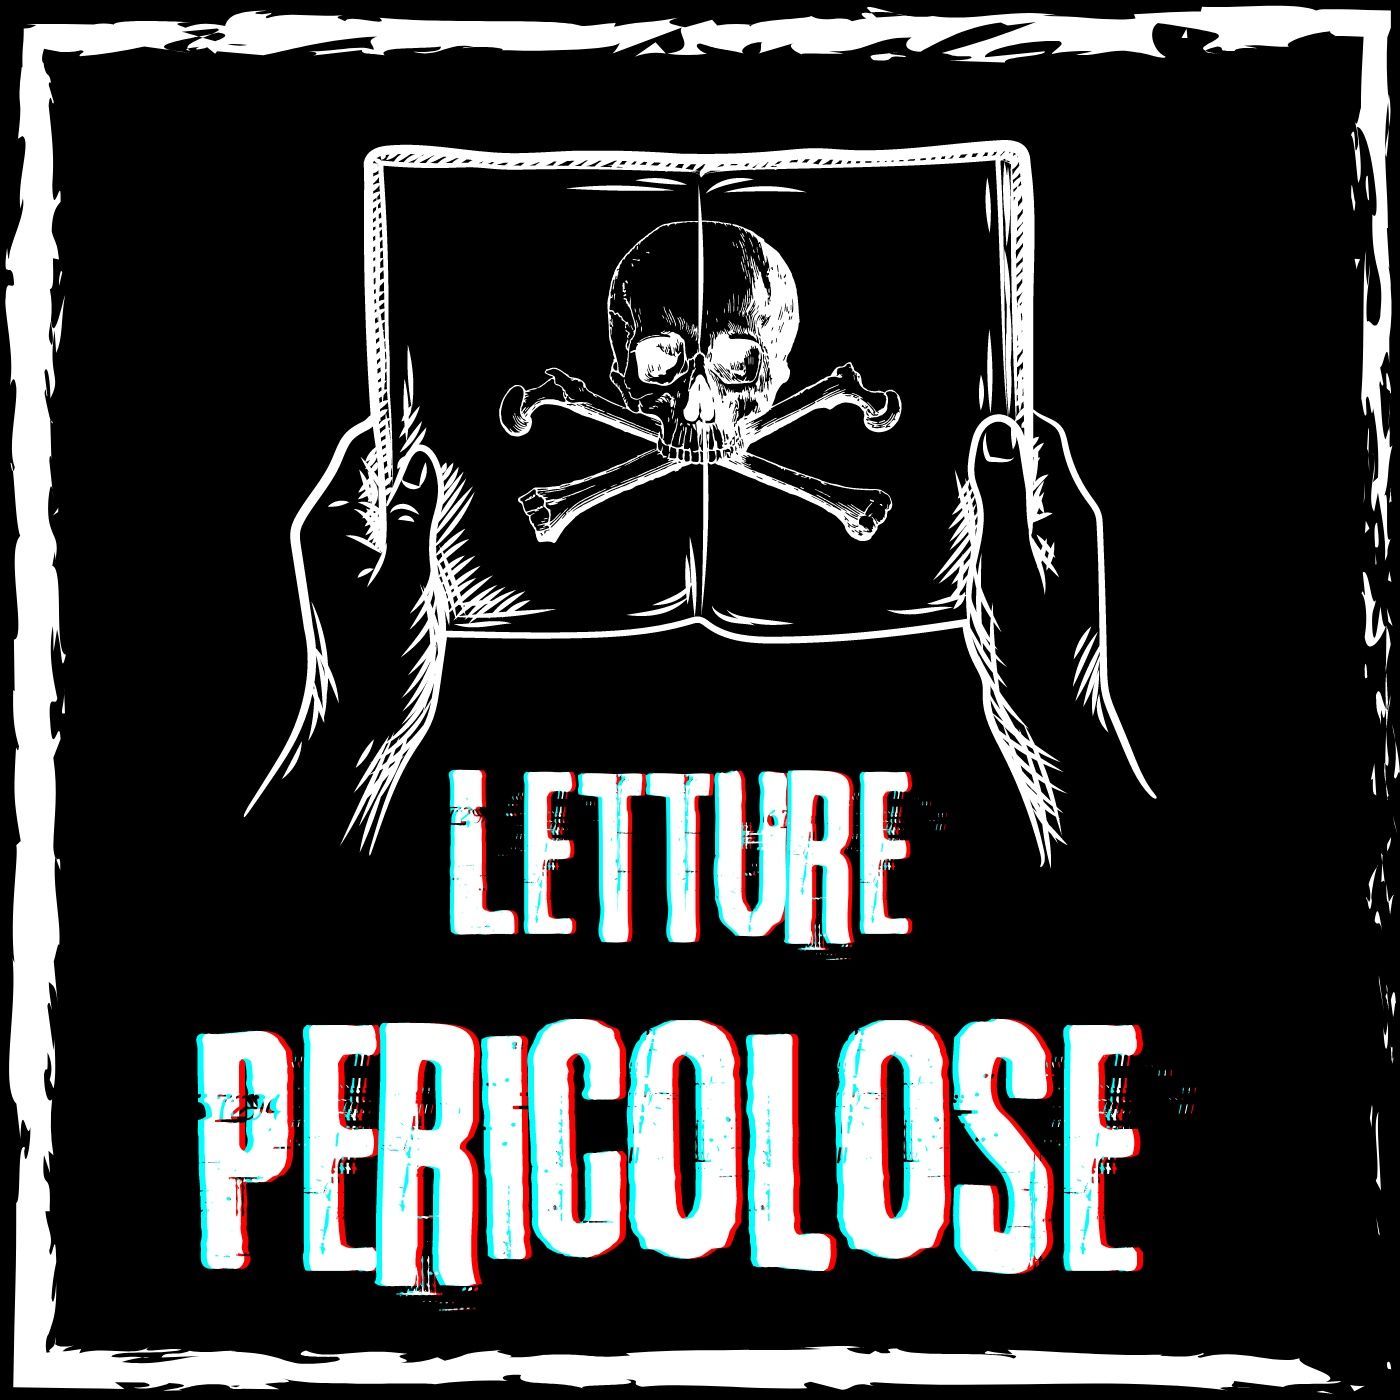 Letture Pericolose - il podcast